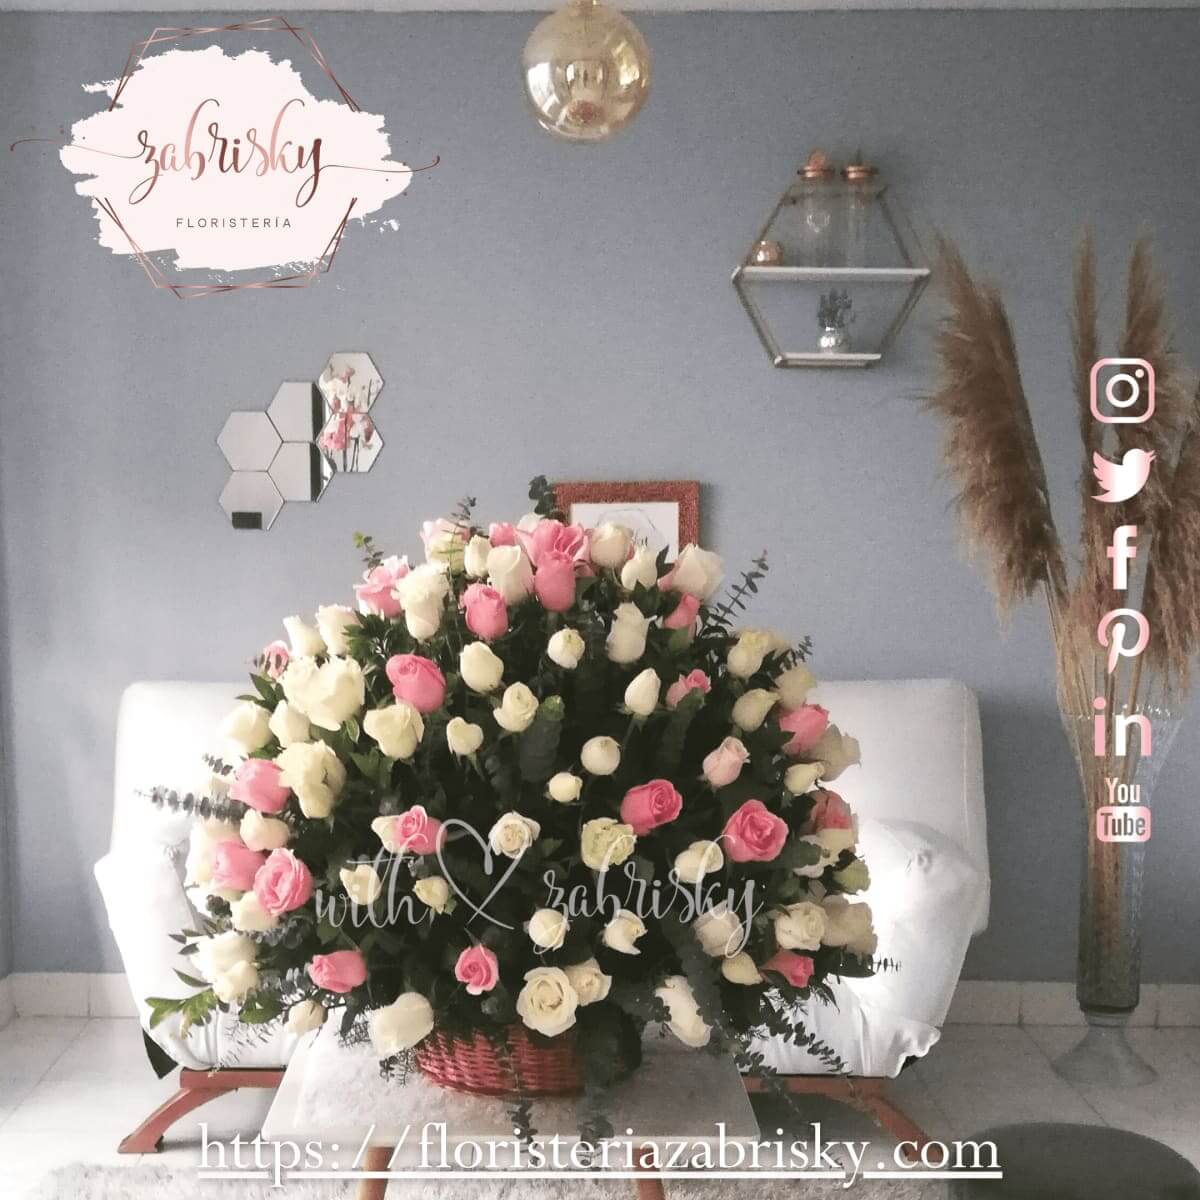 Happiness - 150 Rosas rosadas y blancas - Floristería Zabrisky